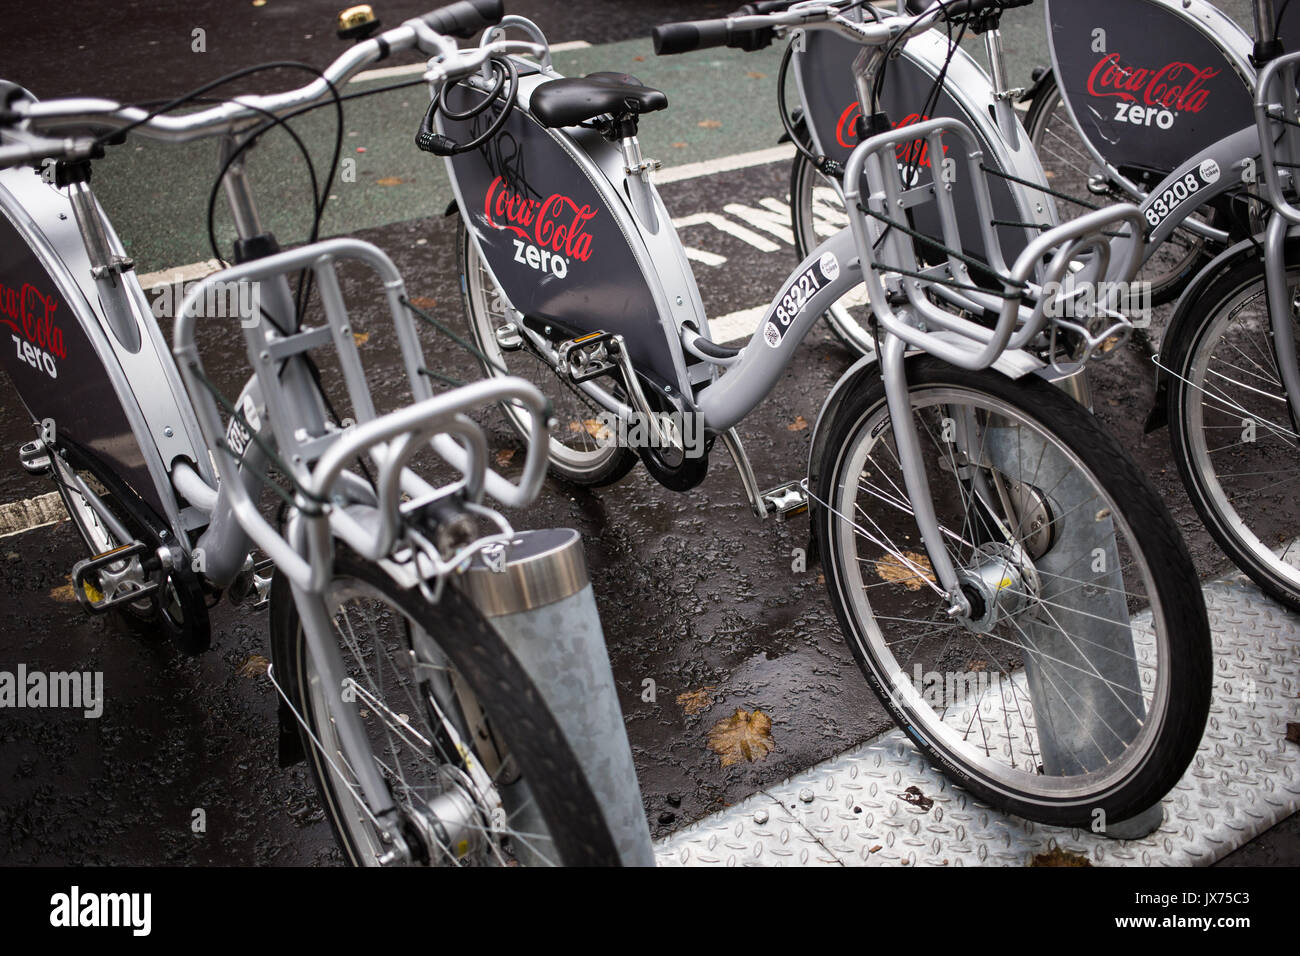 Coca cola zero belfast bikes hi-res stock photography and images - Alamy